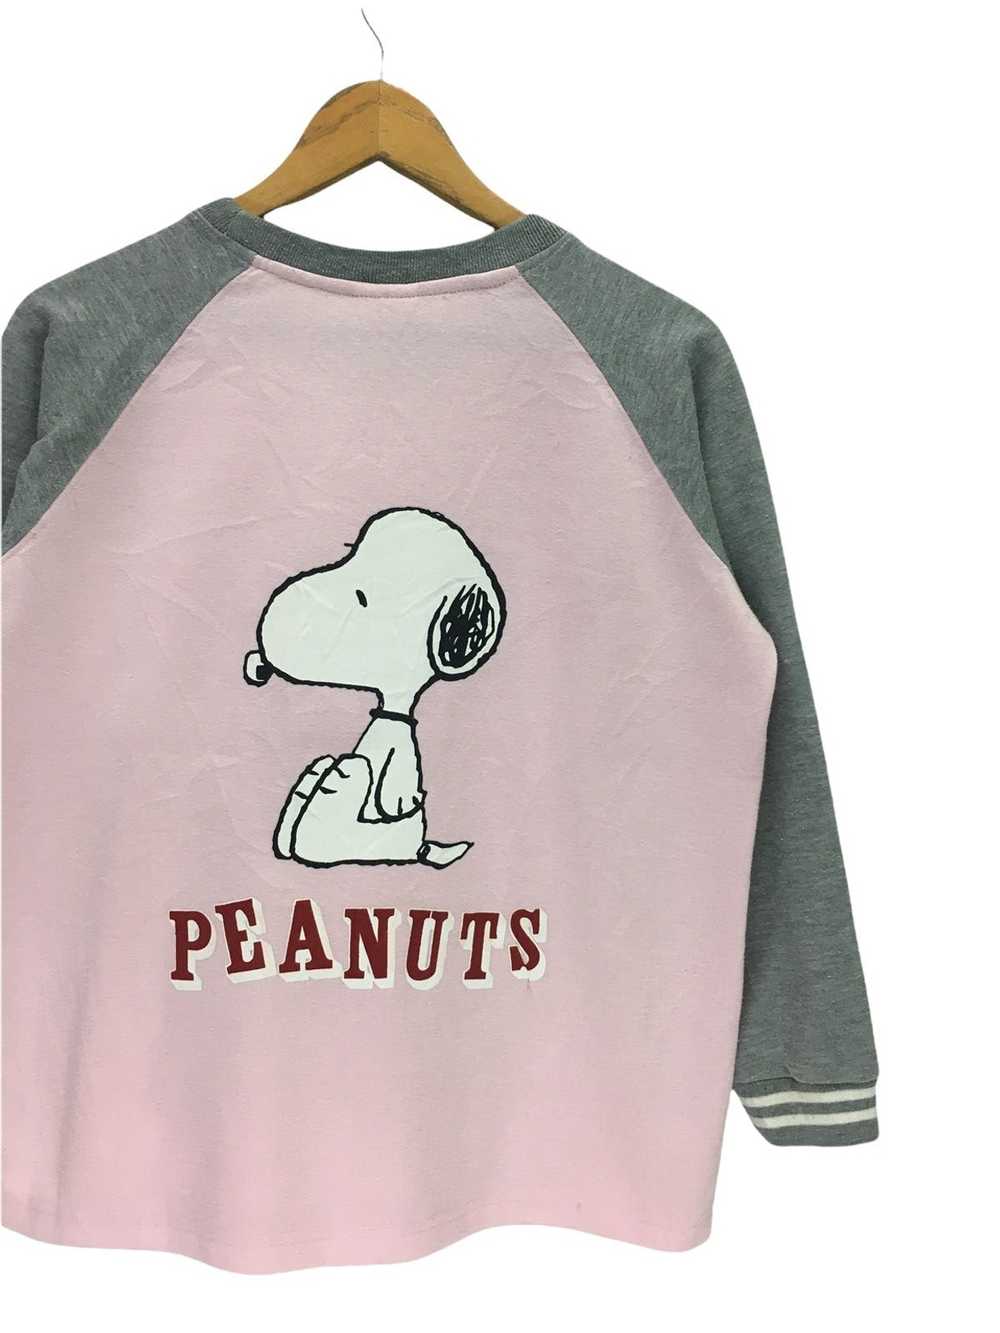 Cartoon Network × Peanuts × Vintage Vintage Peanu… - image 7